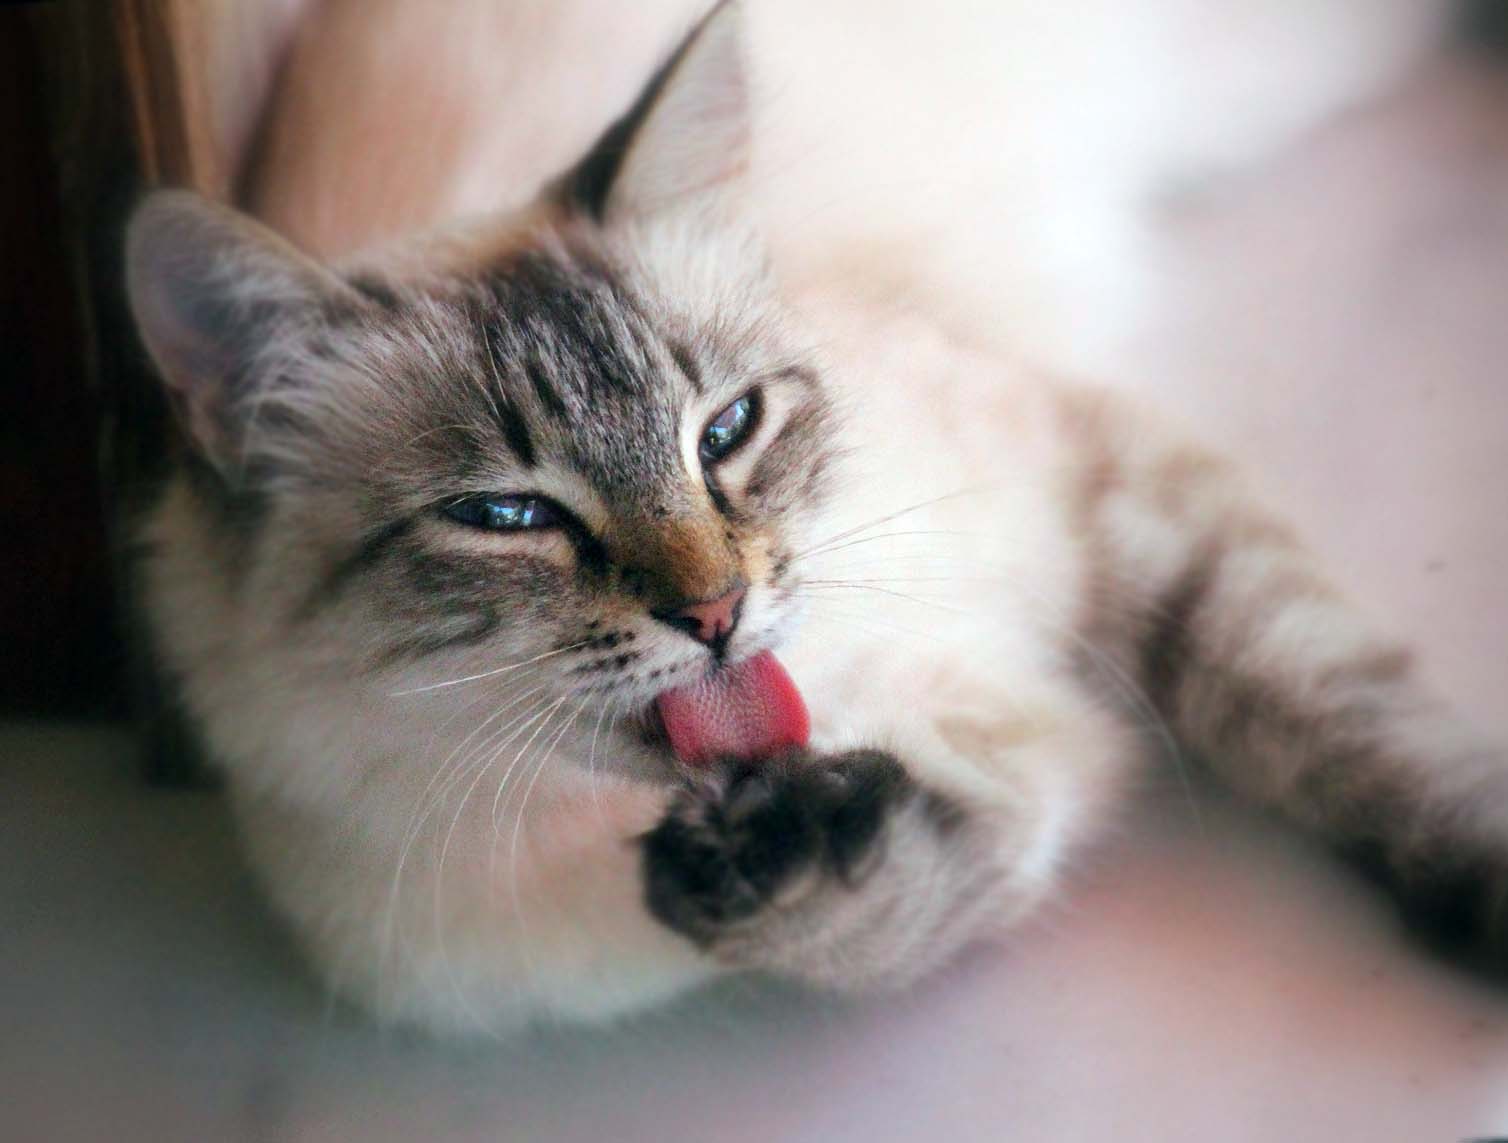 Kedilerin Karnını Doyurduktan Sonra Neden Patilerini Temizler?